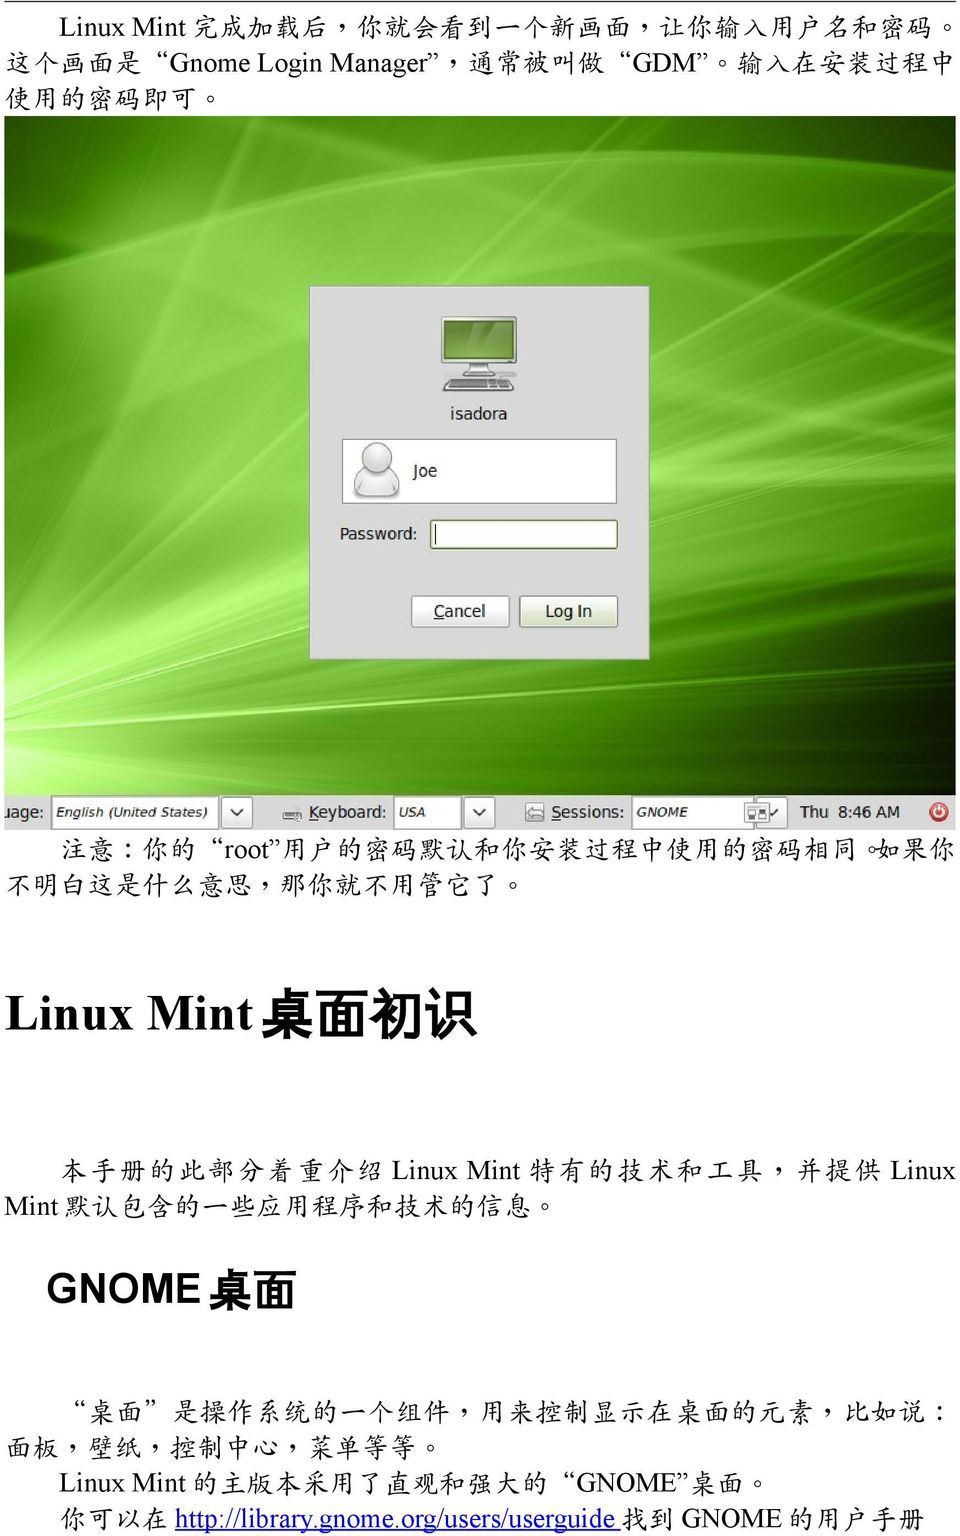 特有的技术和工具 并提供 Linux Mint 默认包含的一些应用程序和技术的信息 GNOME 桌面 桌面 是操作系统的一个组件 用来控制显示在桌面的元素 比如说 面板 壁纸 控制中心